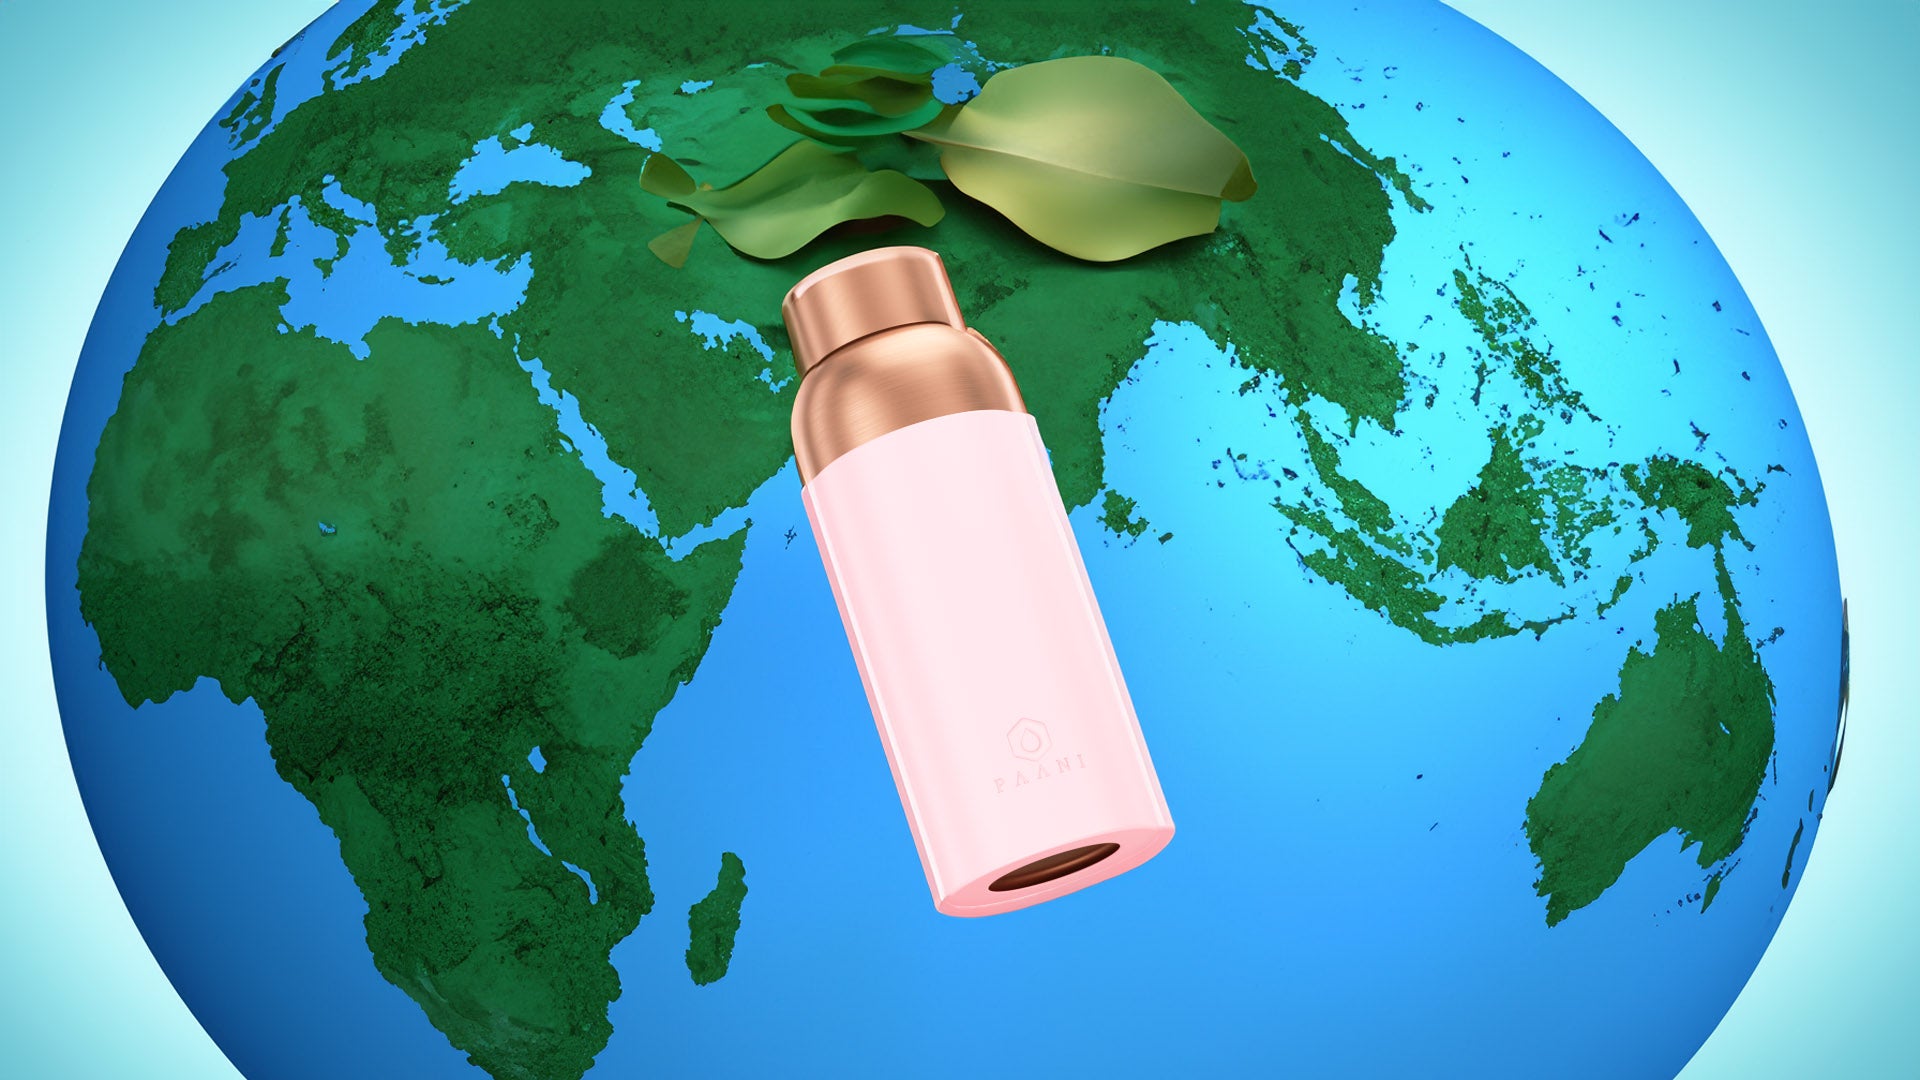 Recyclable Copper water bottle